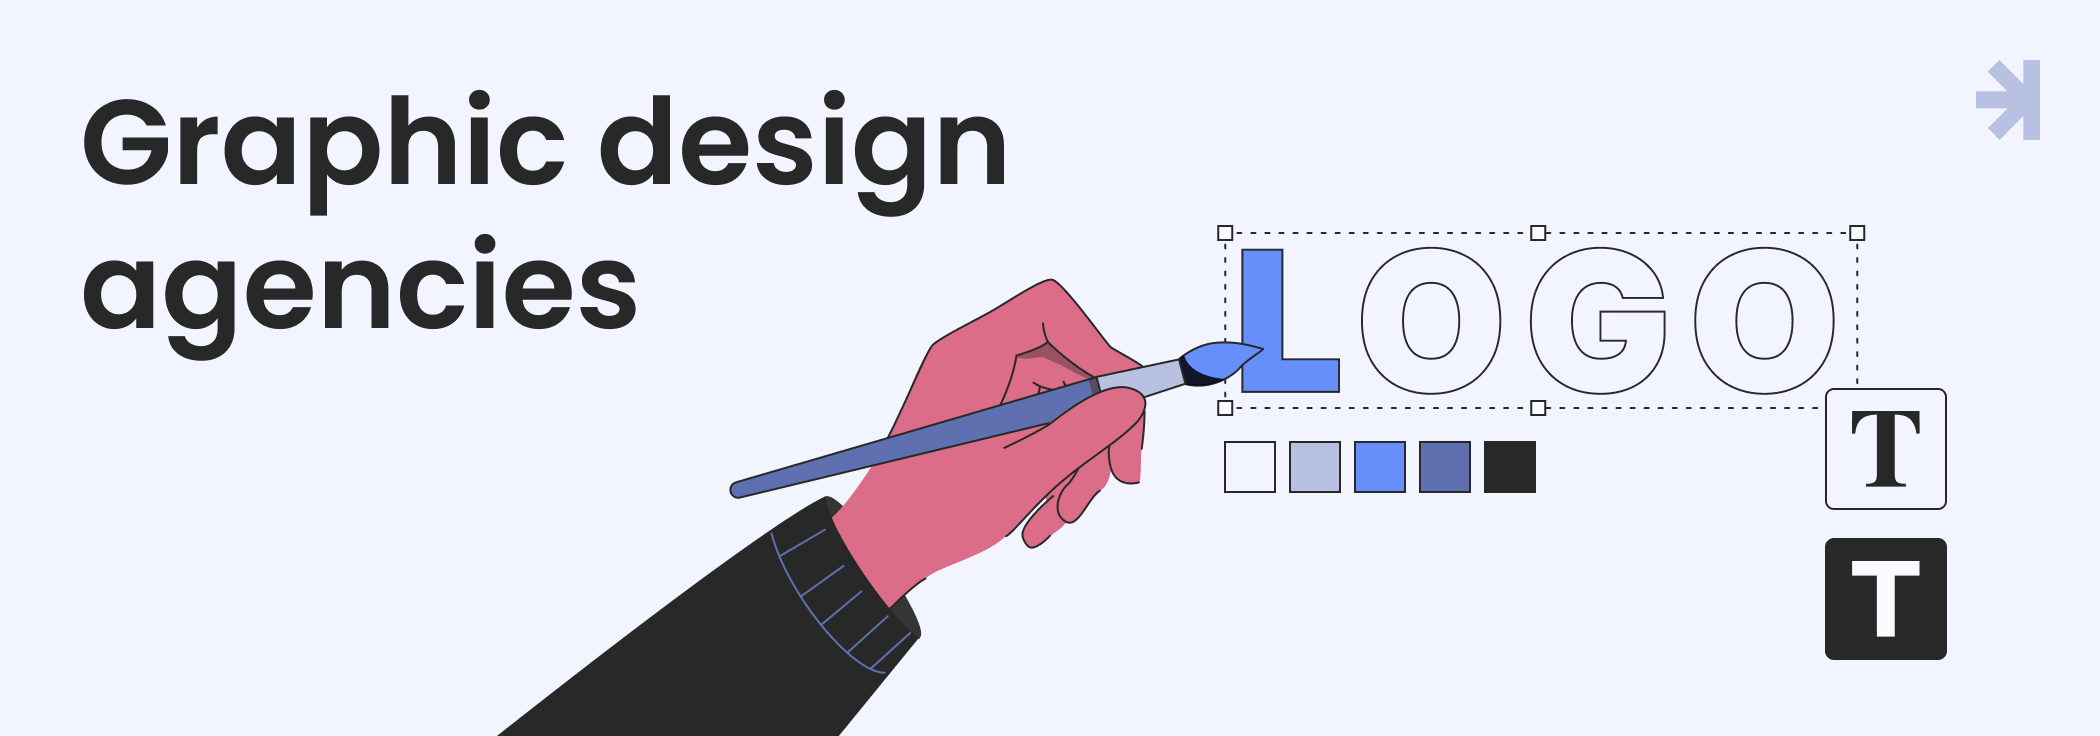 Overview of design agencies